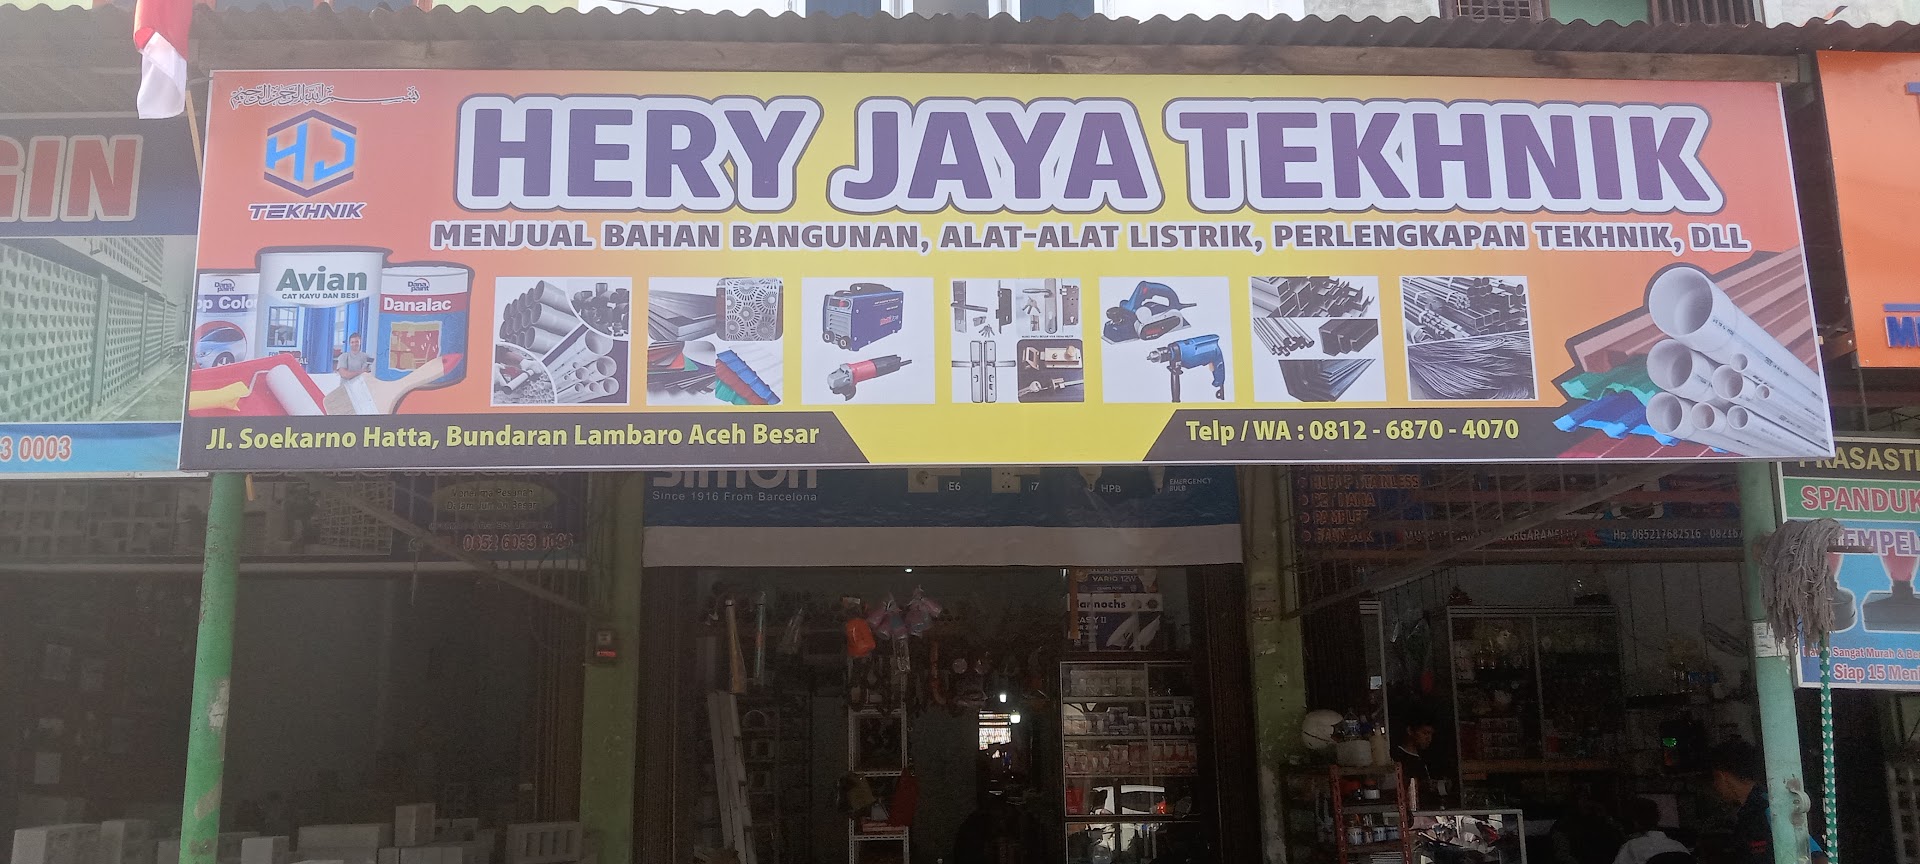 Gambar Toko Hery Jaya Tekhnik. Menjual Bahan Bangunan,cat Besi, Cat Tembok, Alat Listrik ,tekhnik Dll